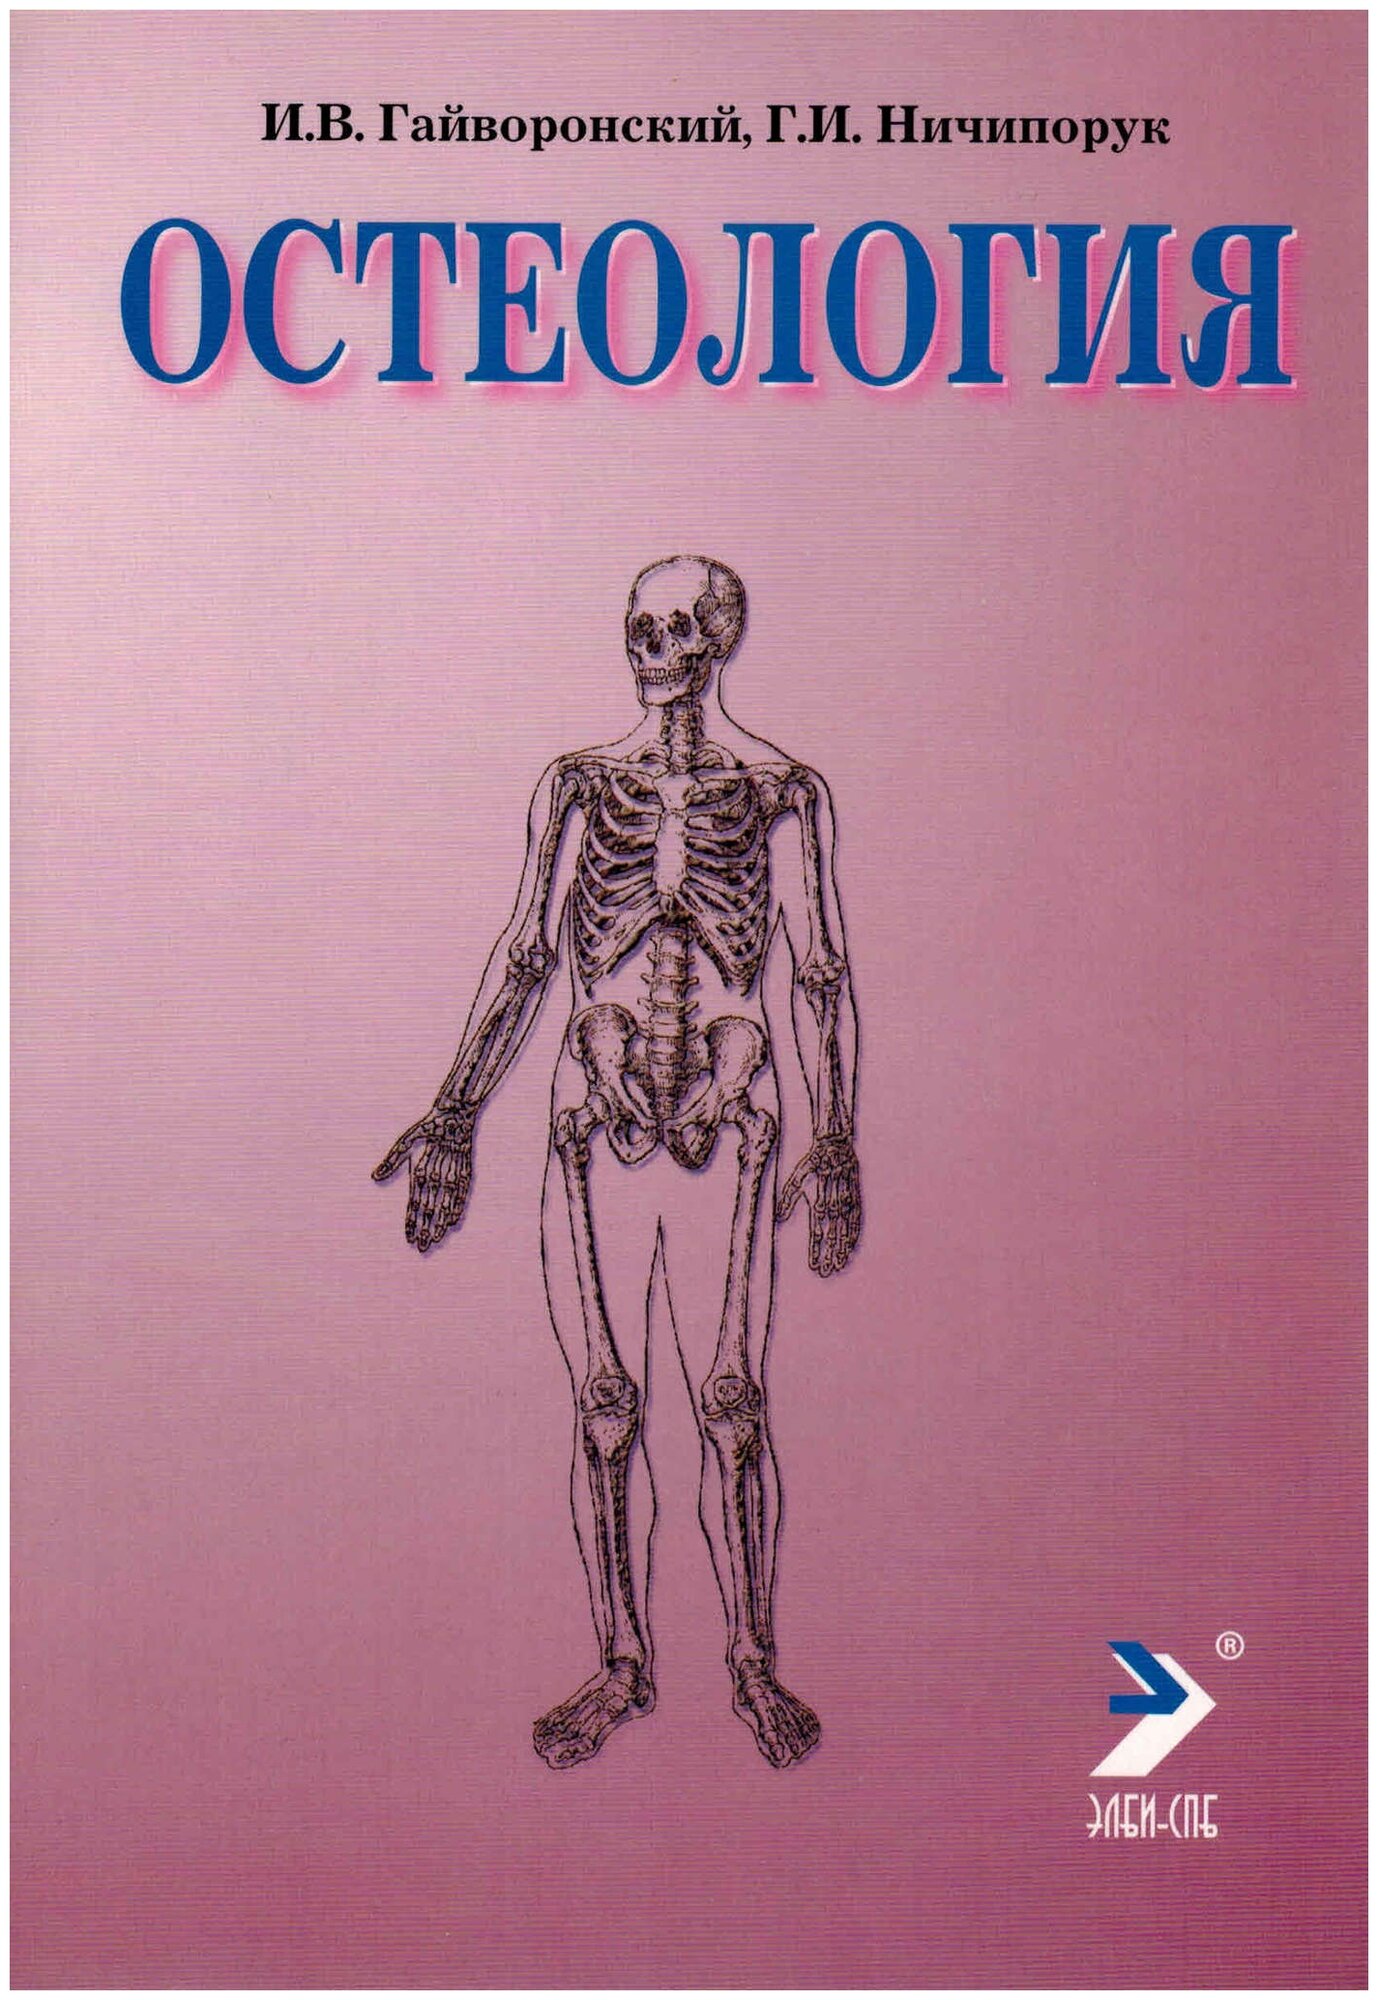 Гайворонский И. В. "Остеология"